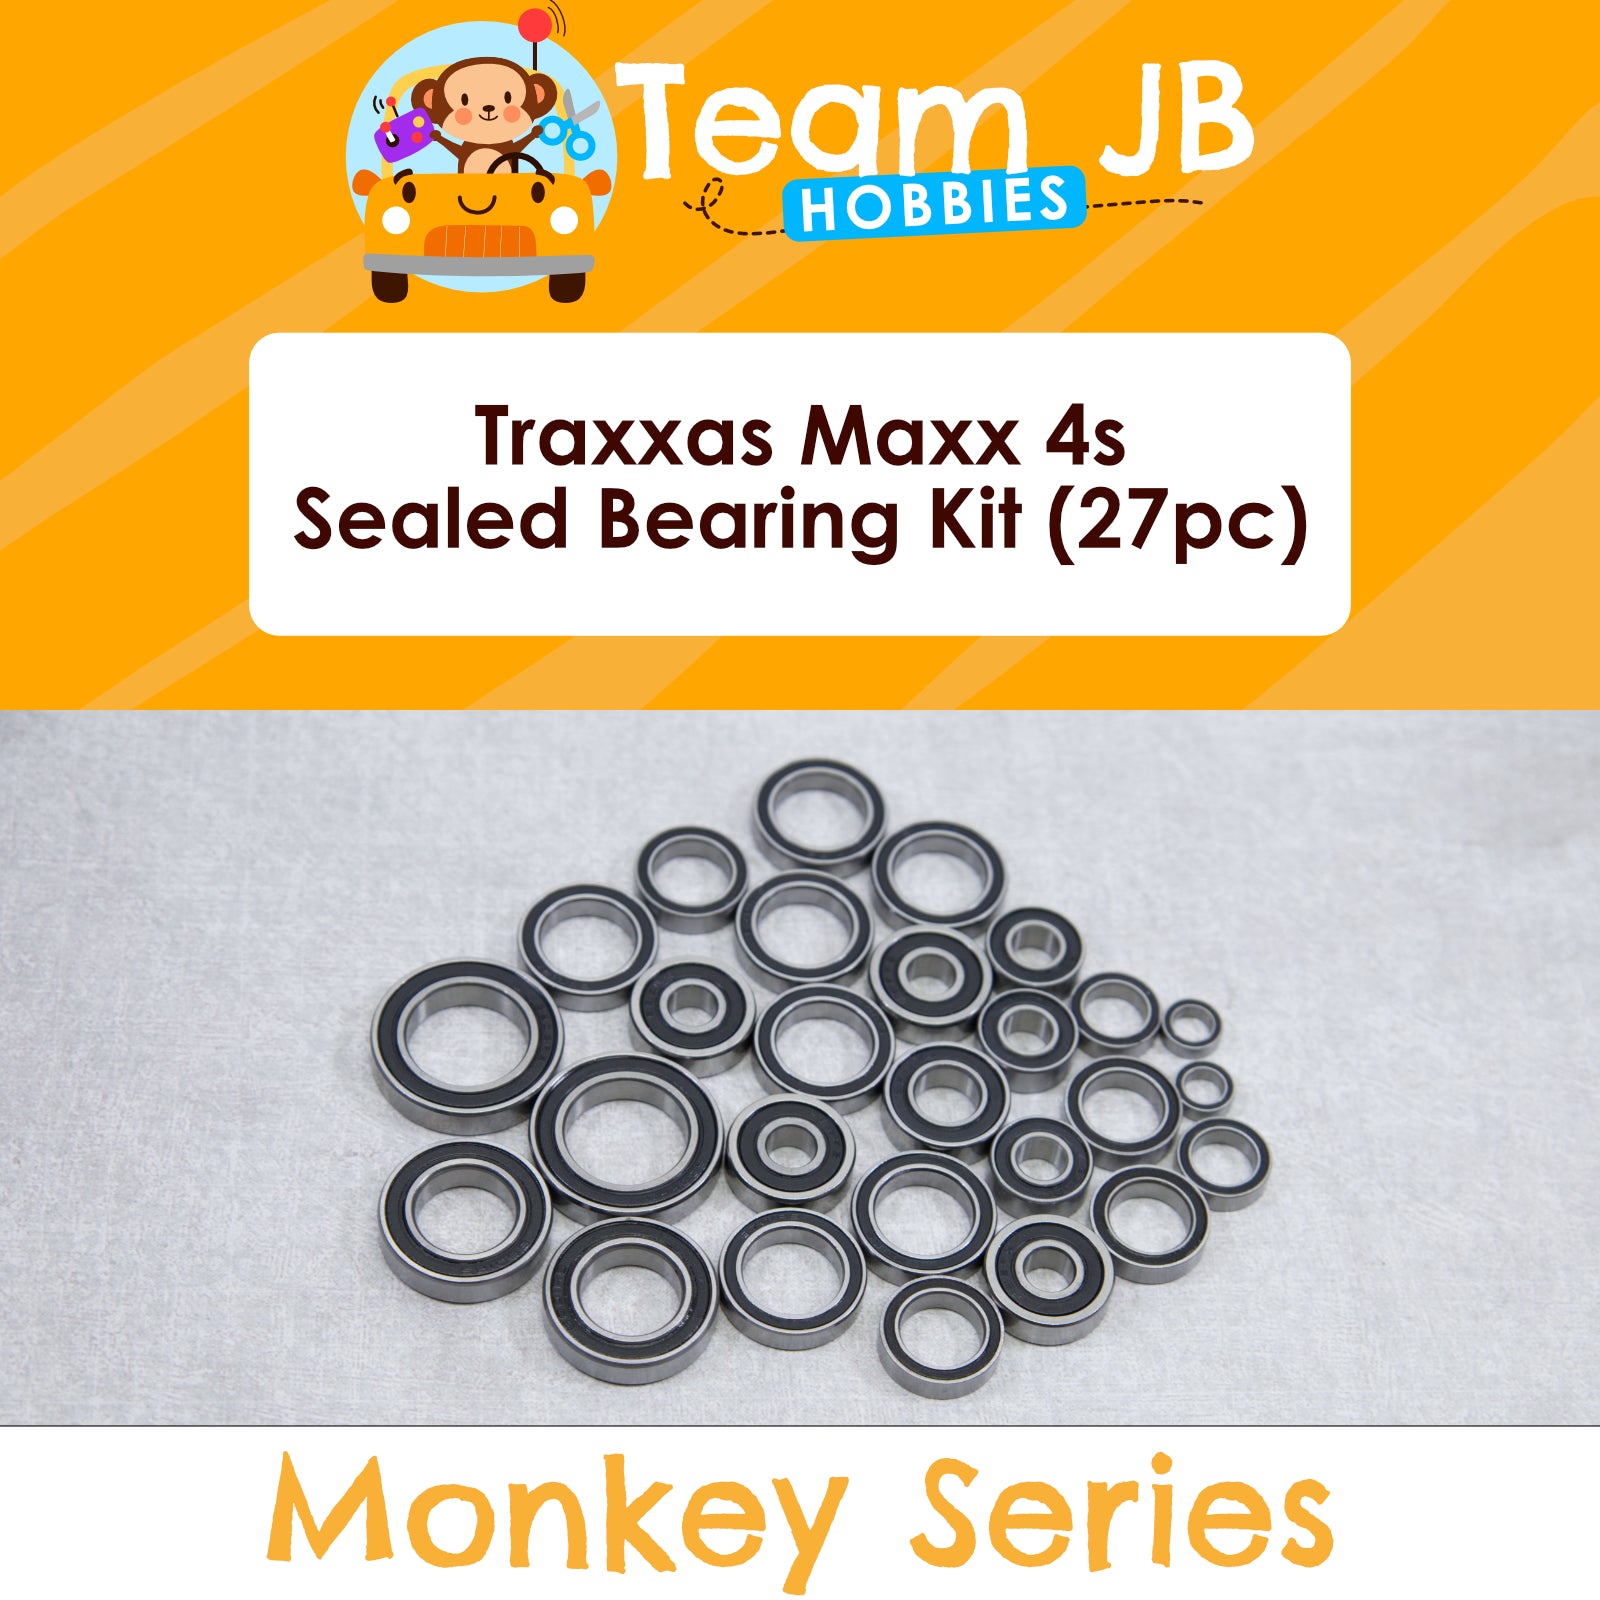 Traxxas Maxx 4s - Sealed Bearing Kit